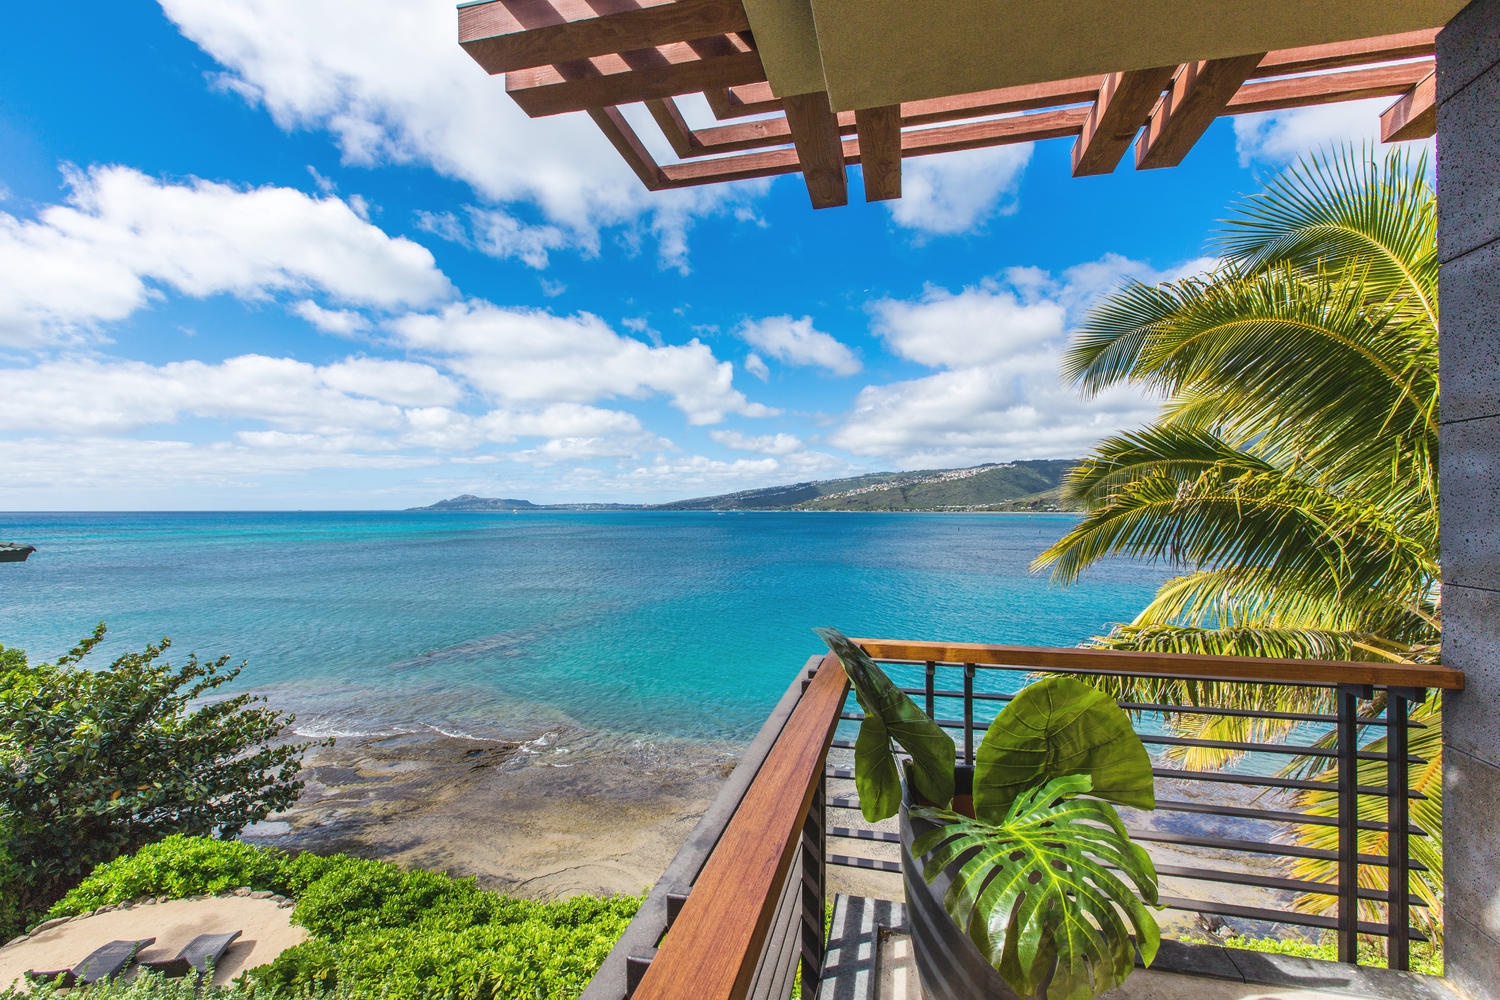 Honolulu Vacation Rentals, Ocean House 4 Bedroom - Primary bedroom lanai views